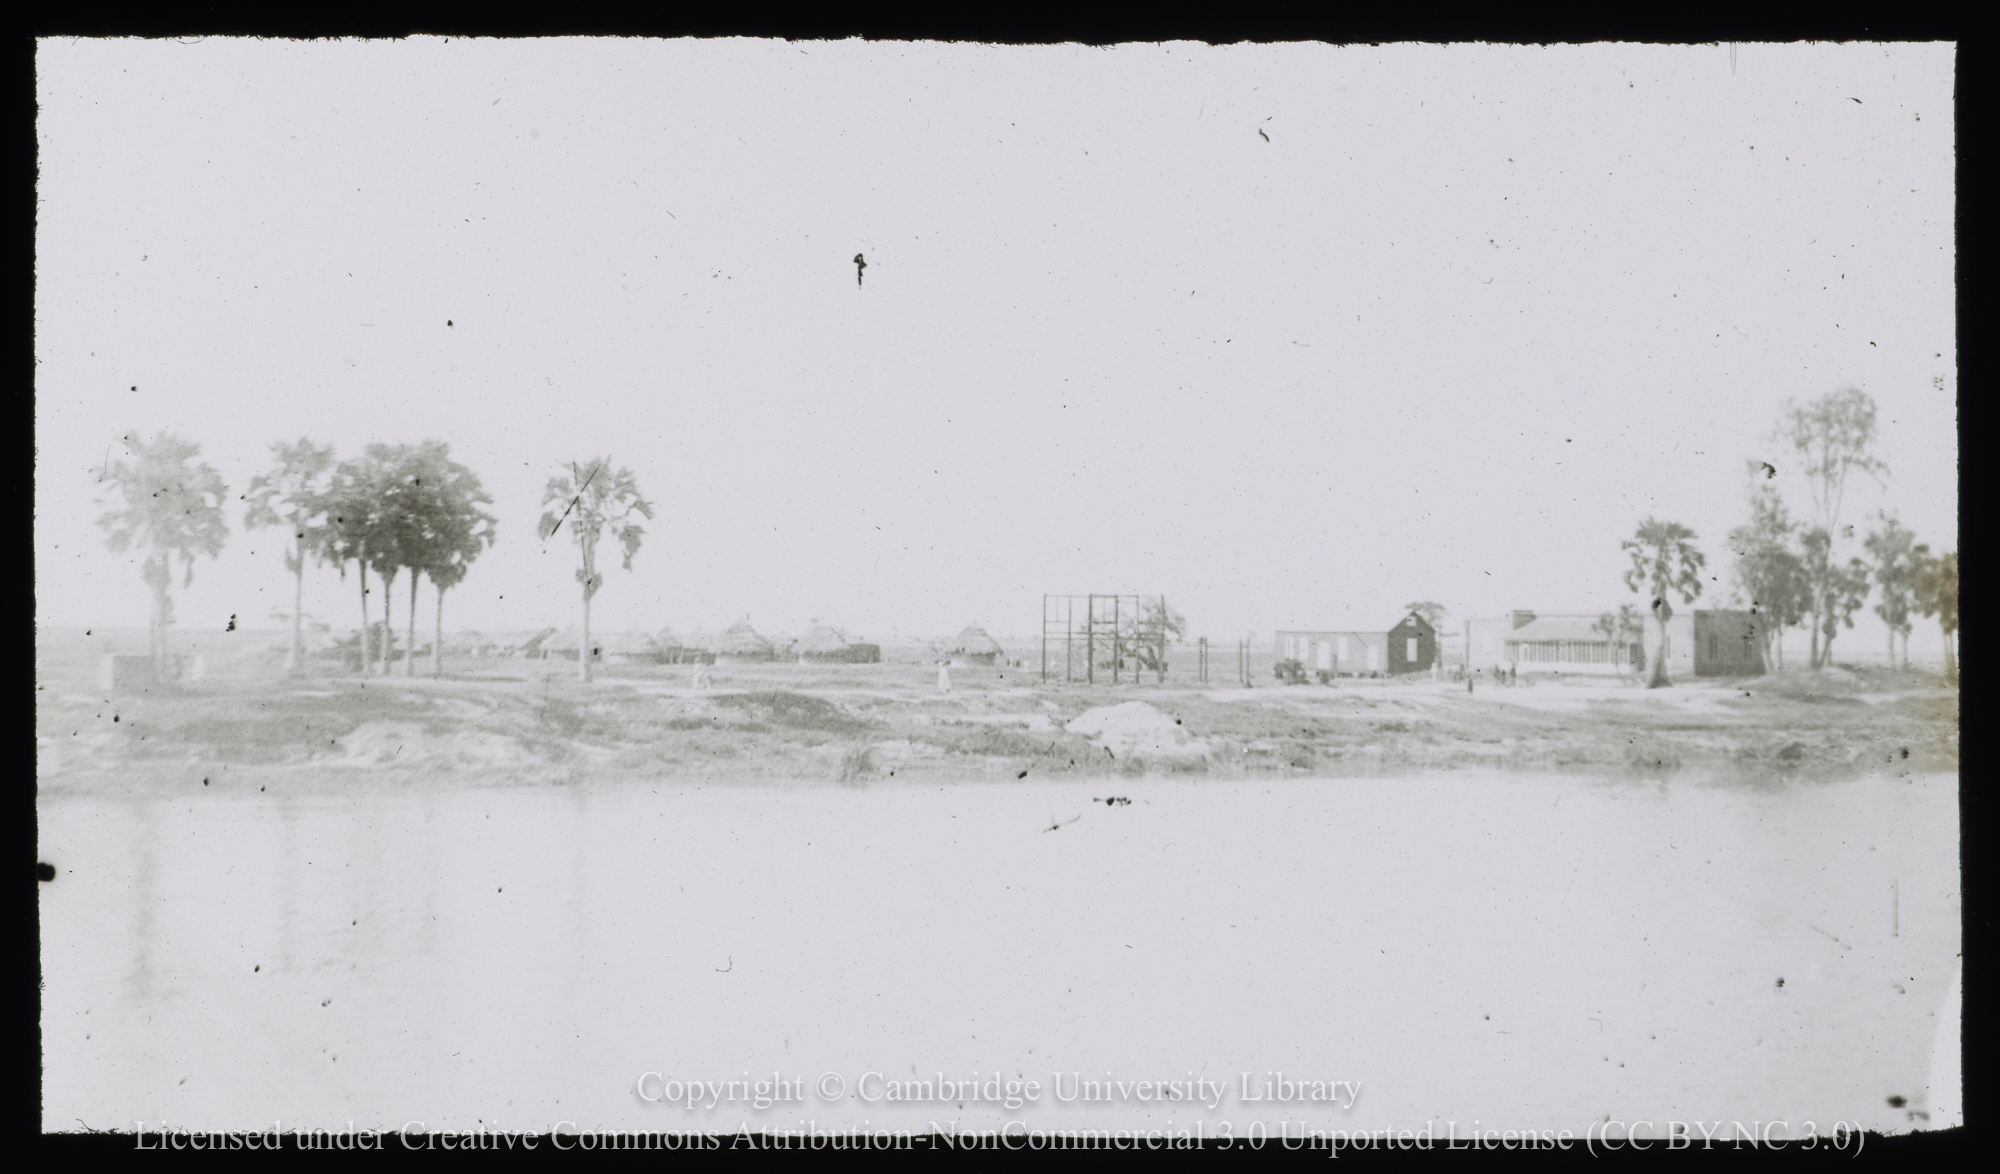 Tanfikia viewed across the White Nile River, 1935